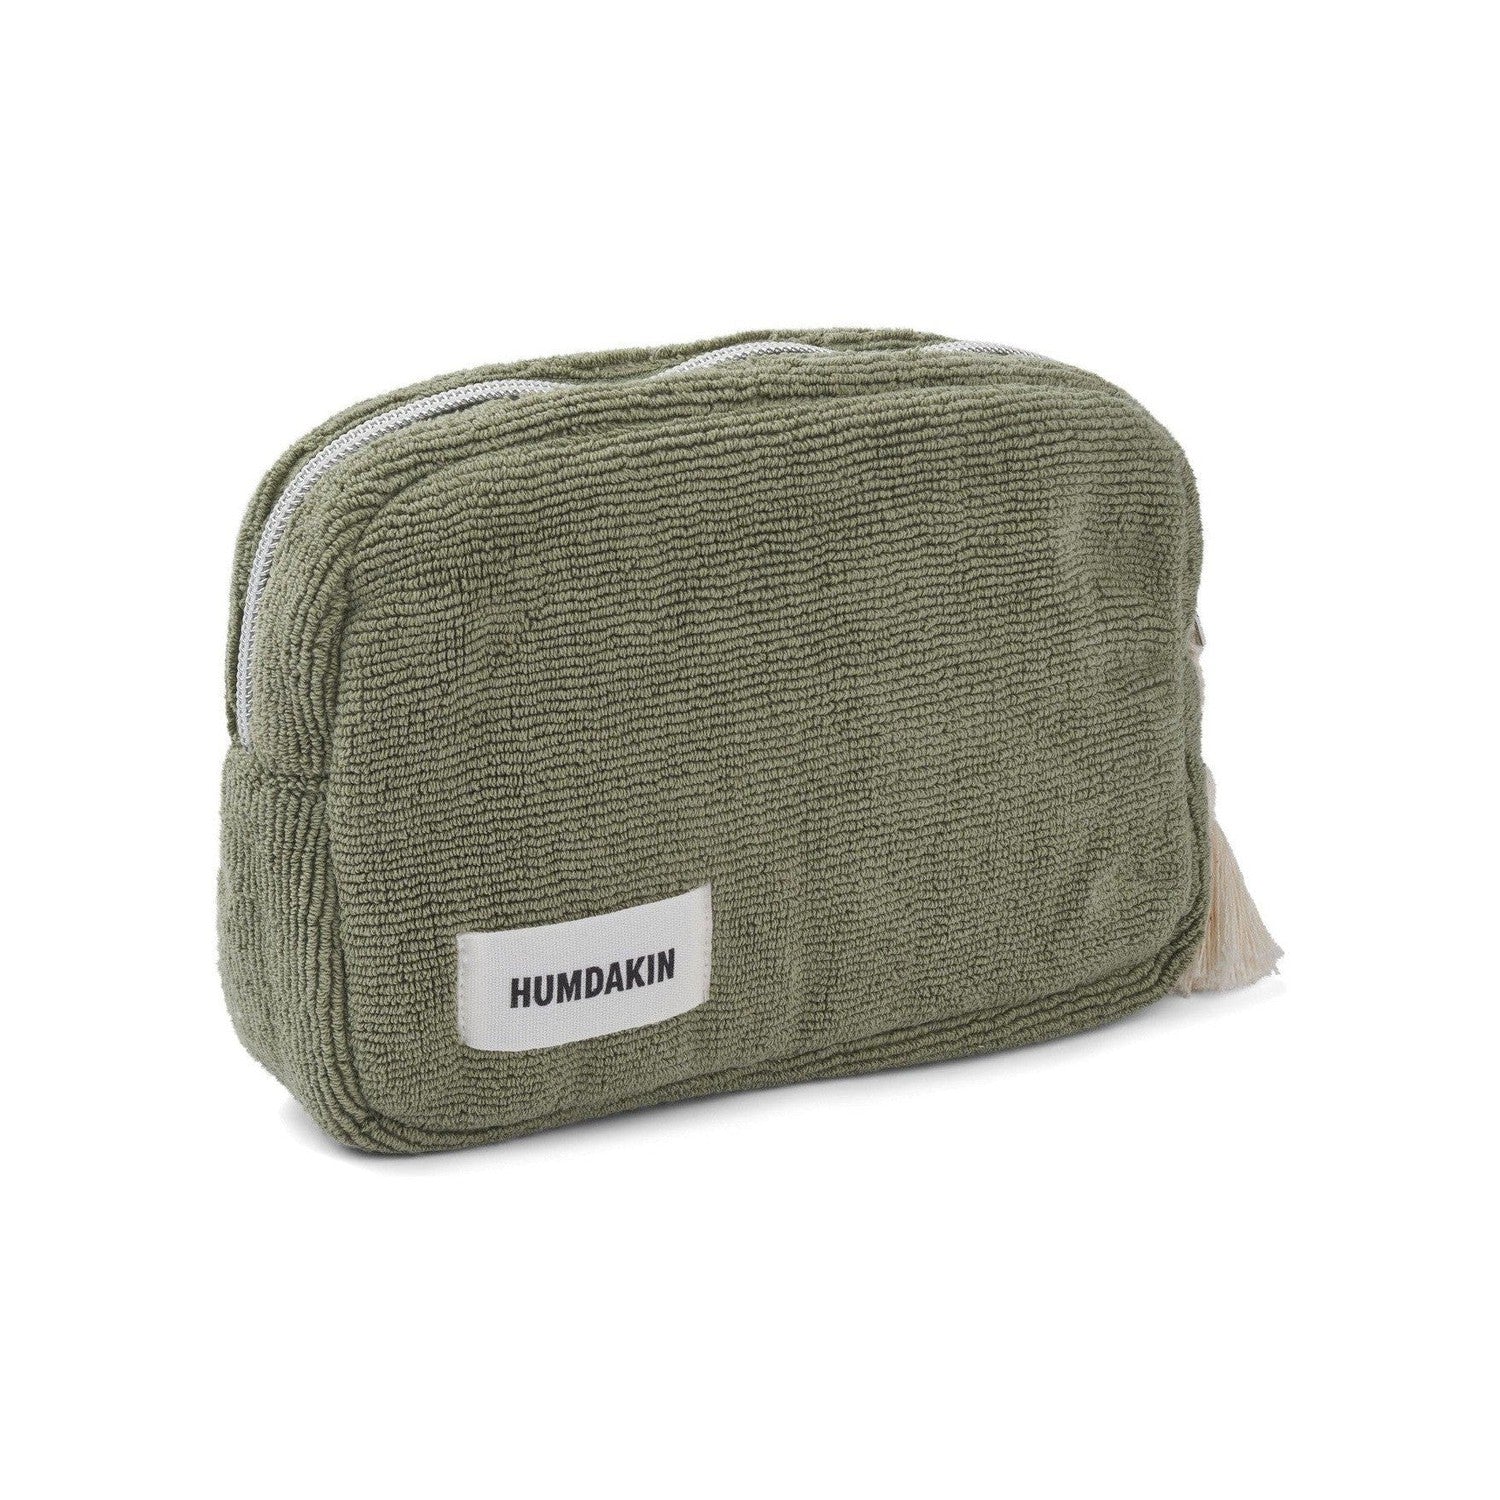 Humdakin Terry Cosmetic Bag, Green Tea